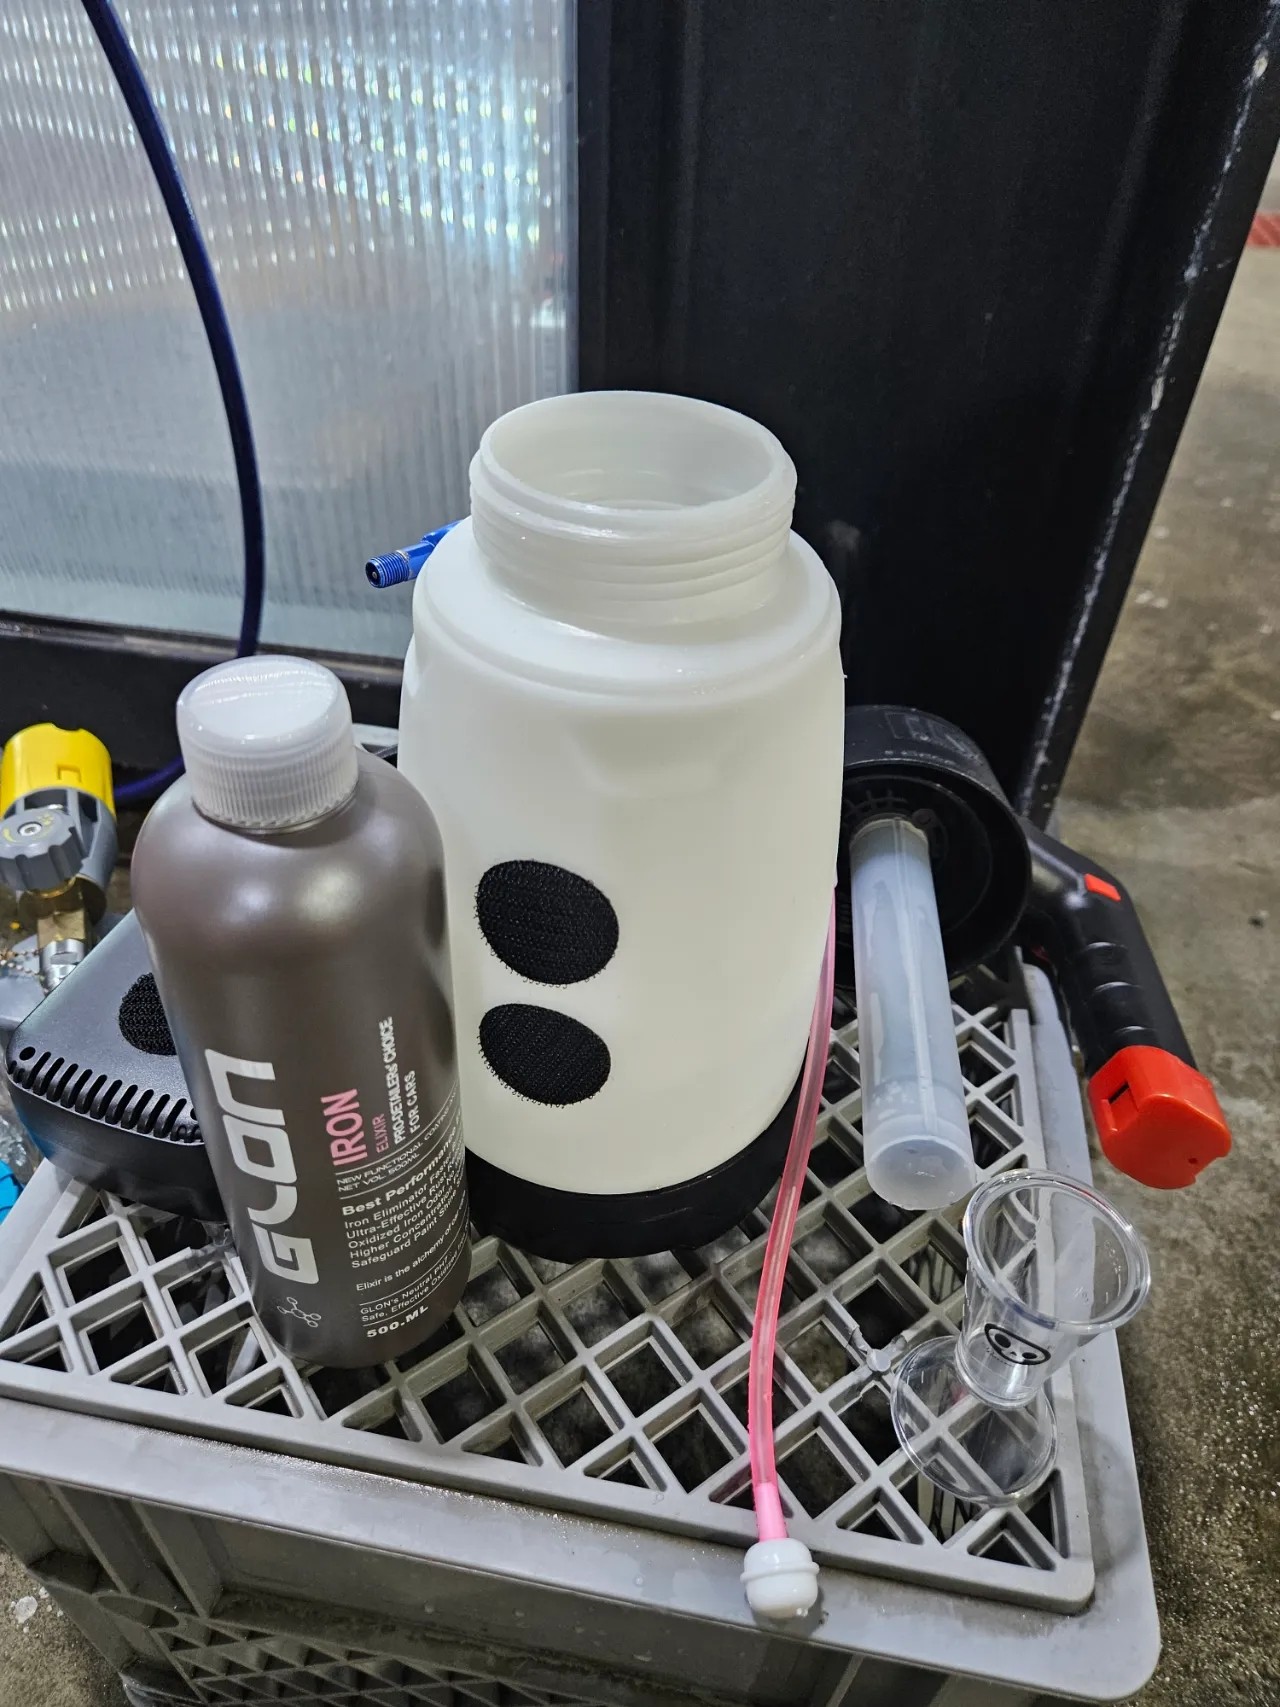 청량 음료, 플라스틱, 폐기물 컨테이너, 주방가전이(가) 표시된 사진

자동 생성된 설명